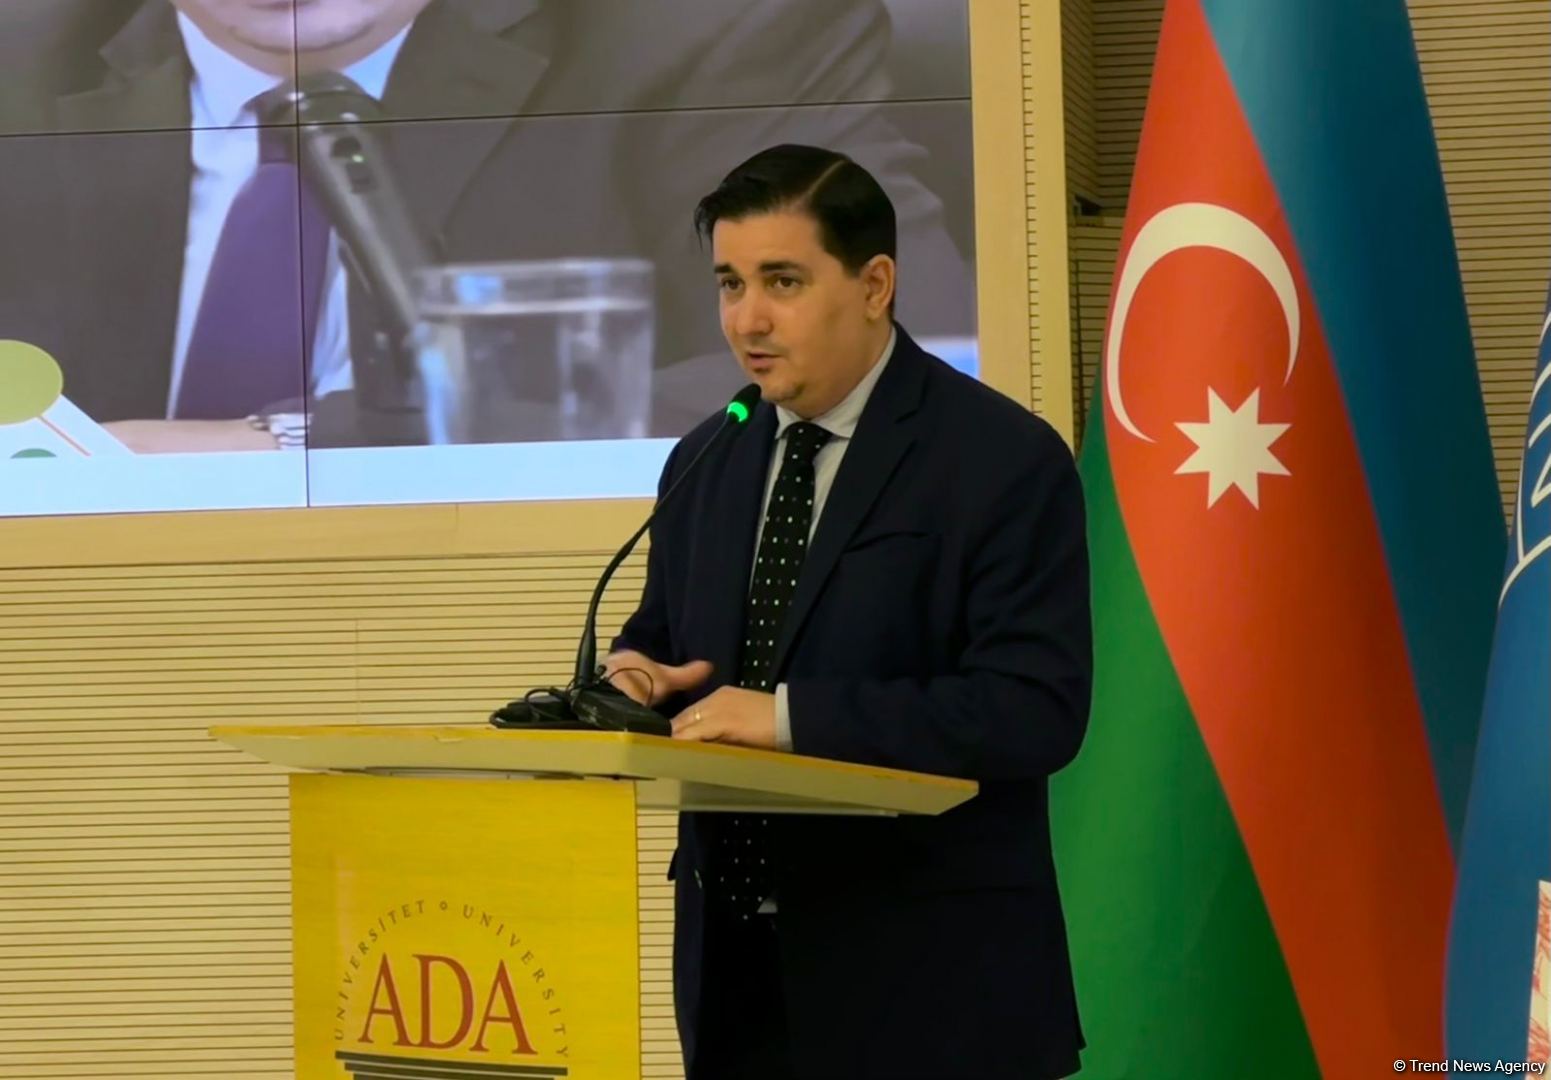 ПРООН подготовила конкретные меры по реализации ЦУР по Азербайджану до 2030 года